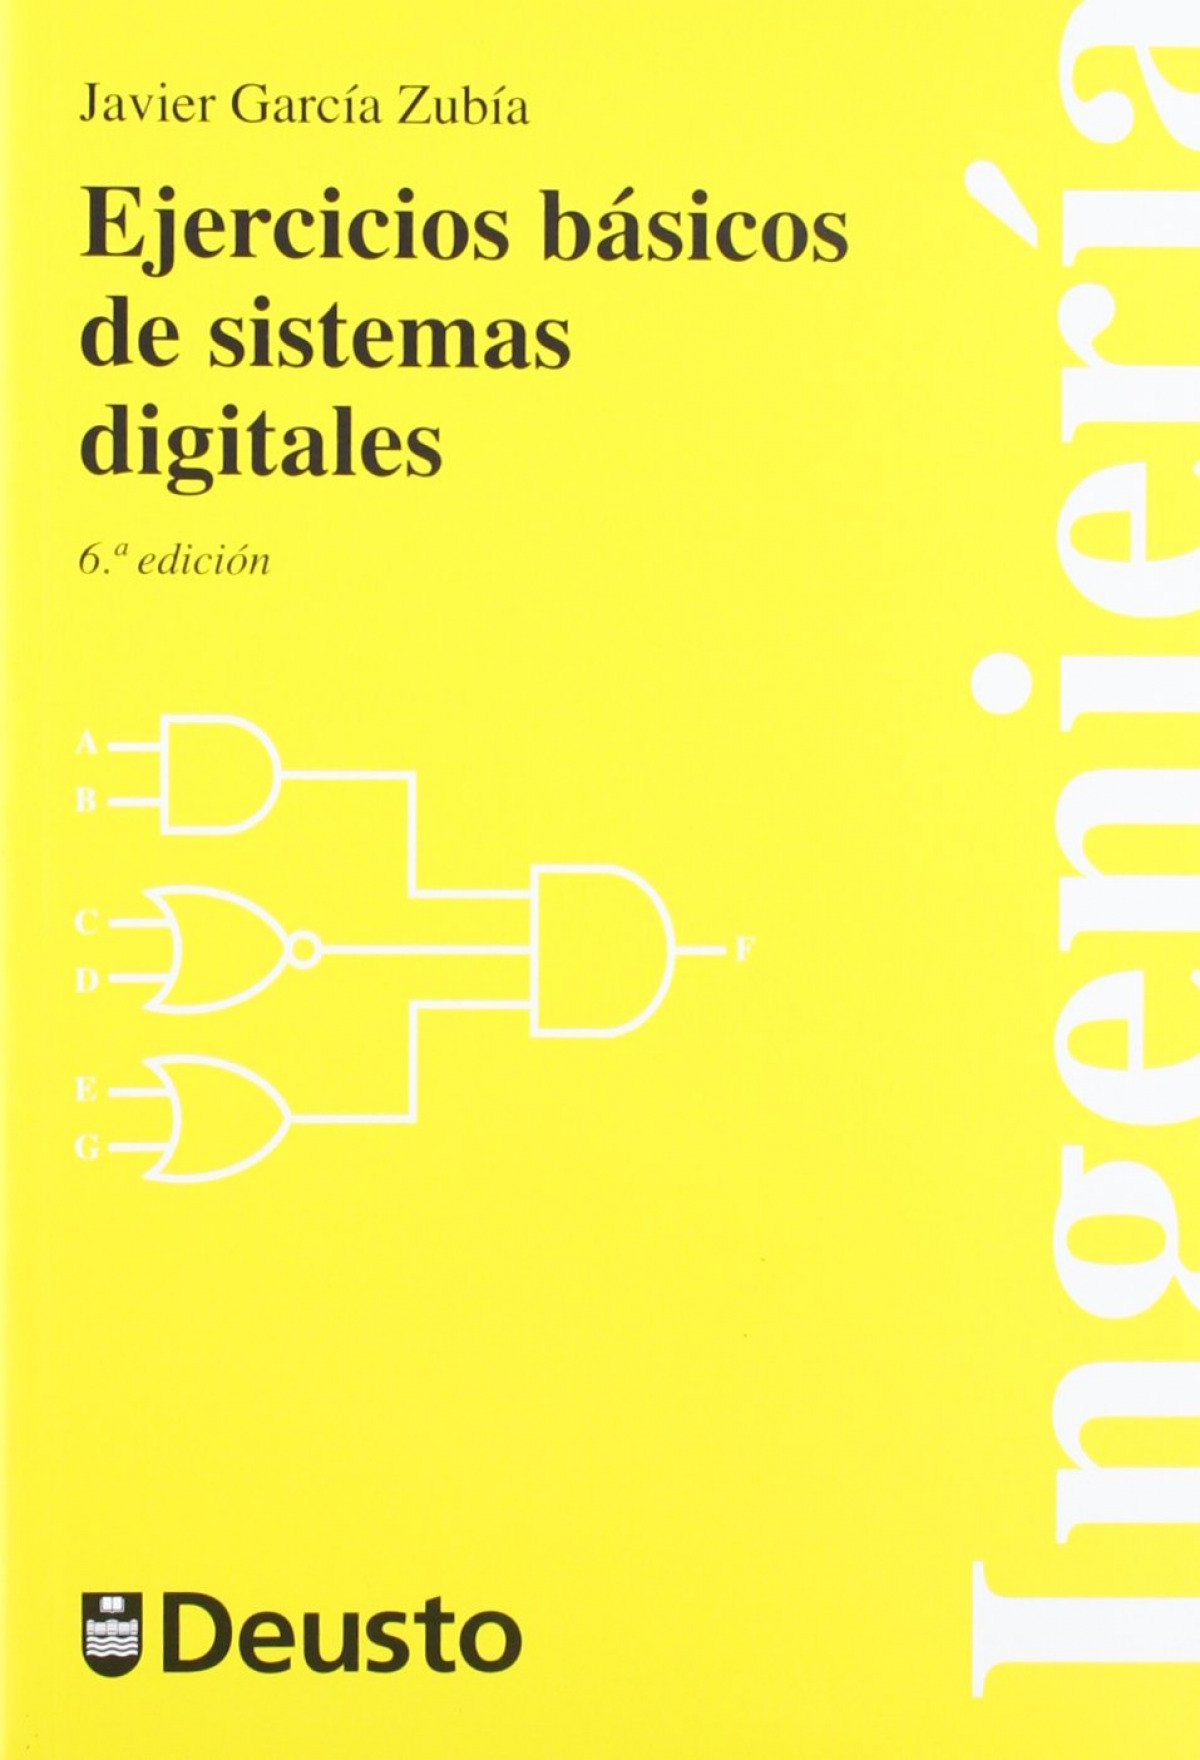 Ejercicios basicos de sistemas digitales - Garcia Zubia, Javier